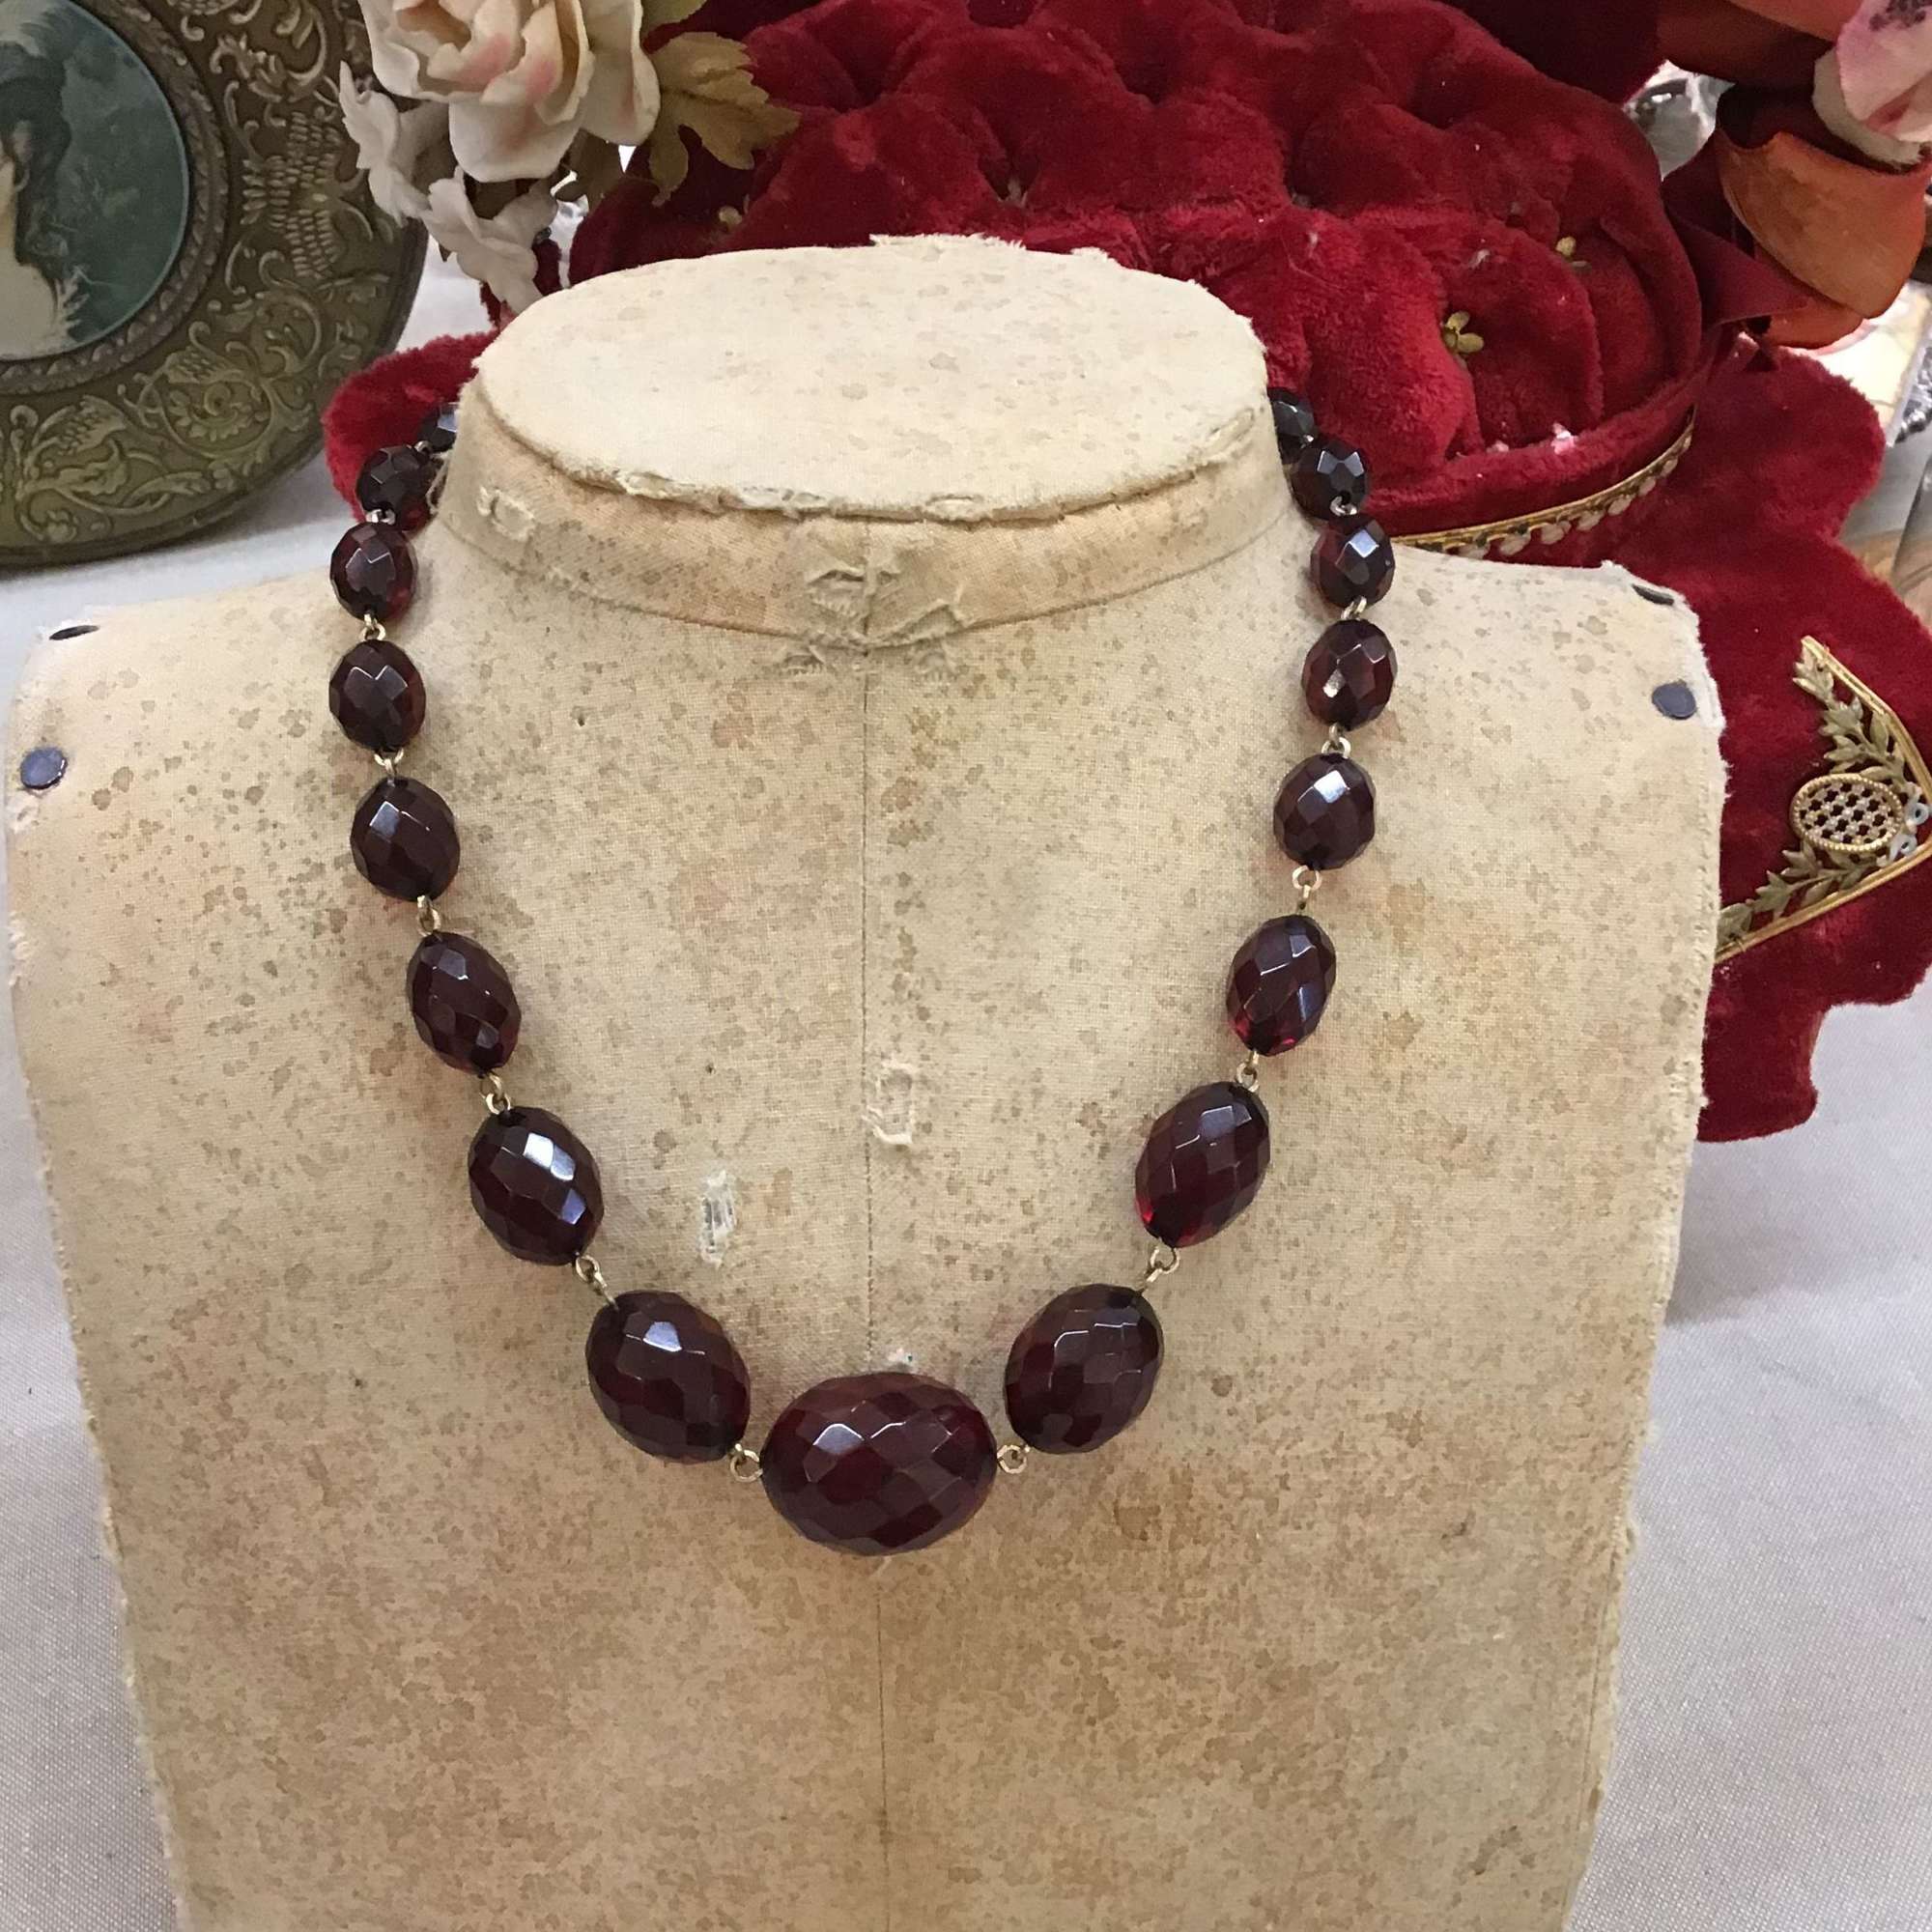 Antique Cherry Bakelite necklace